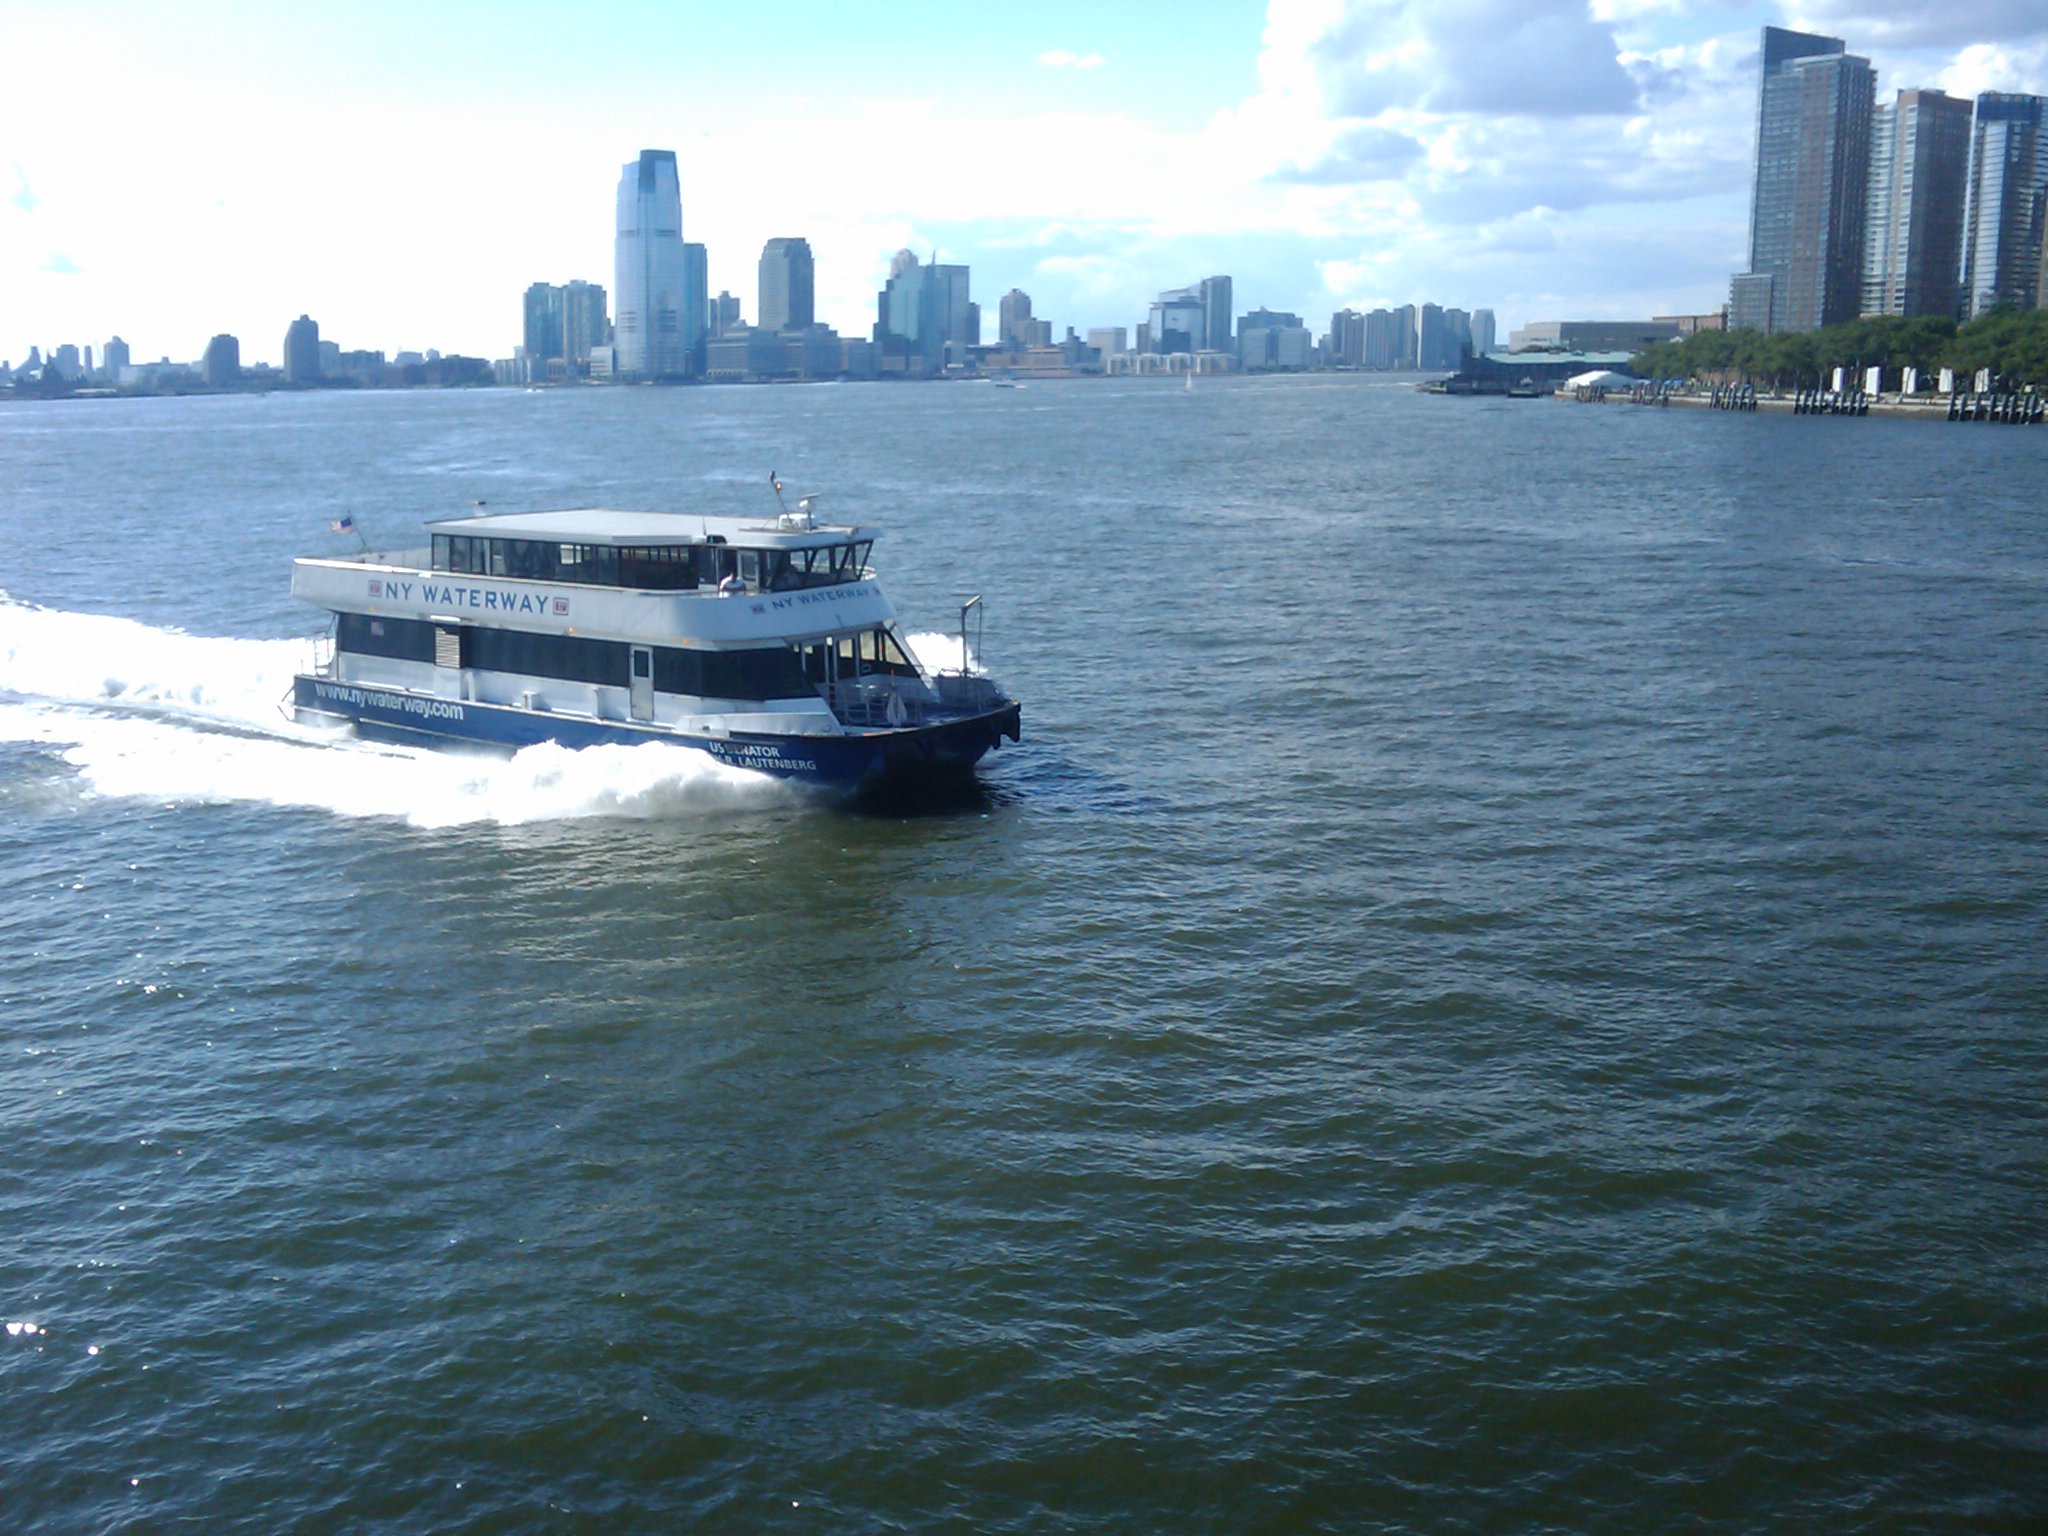 File:NY Waterway -b.jpg - Wikimedia Commons